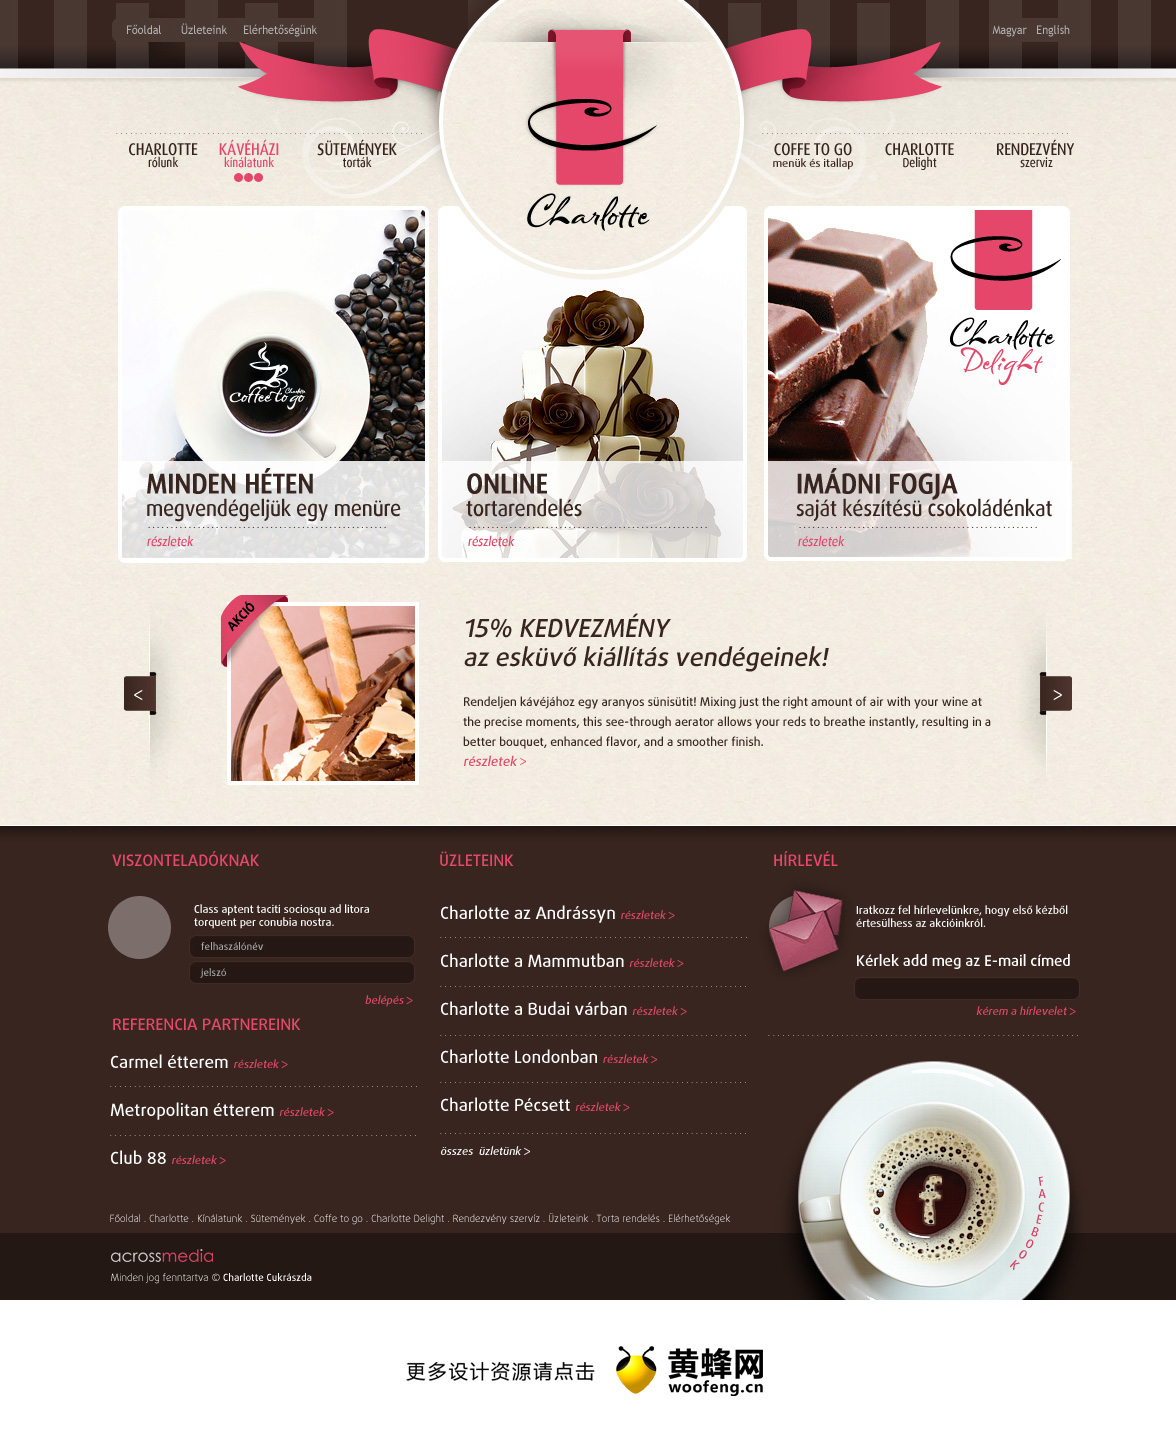 蛋糕和咖啡店铺的网站模板设计欣赏，来源自黄蜂网https://woofeng.cn/webcut